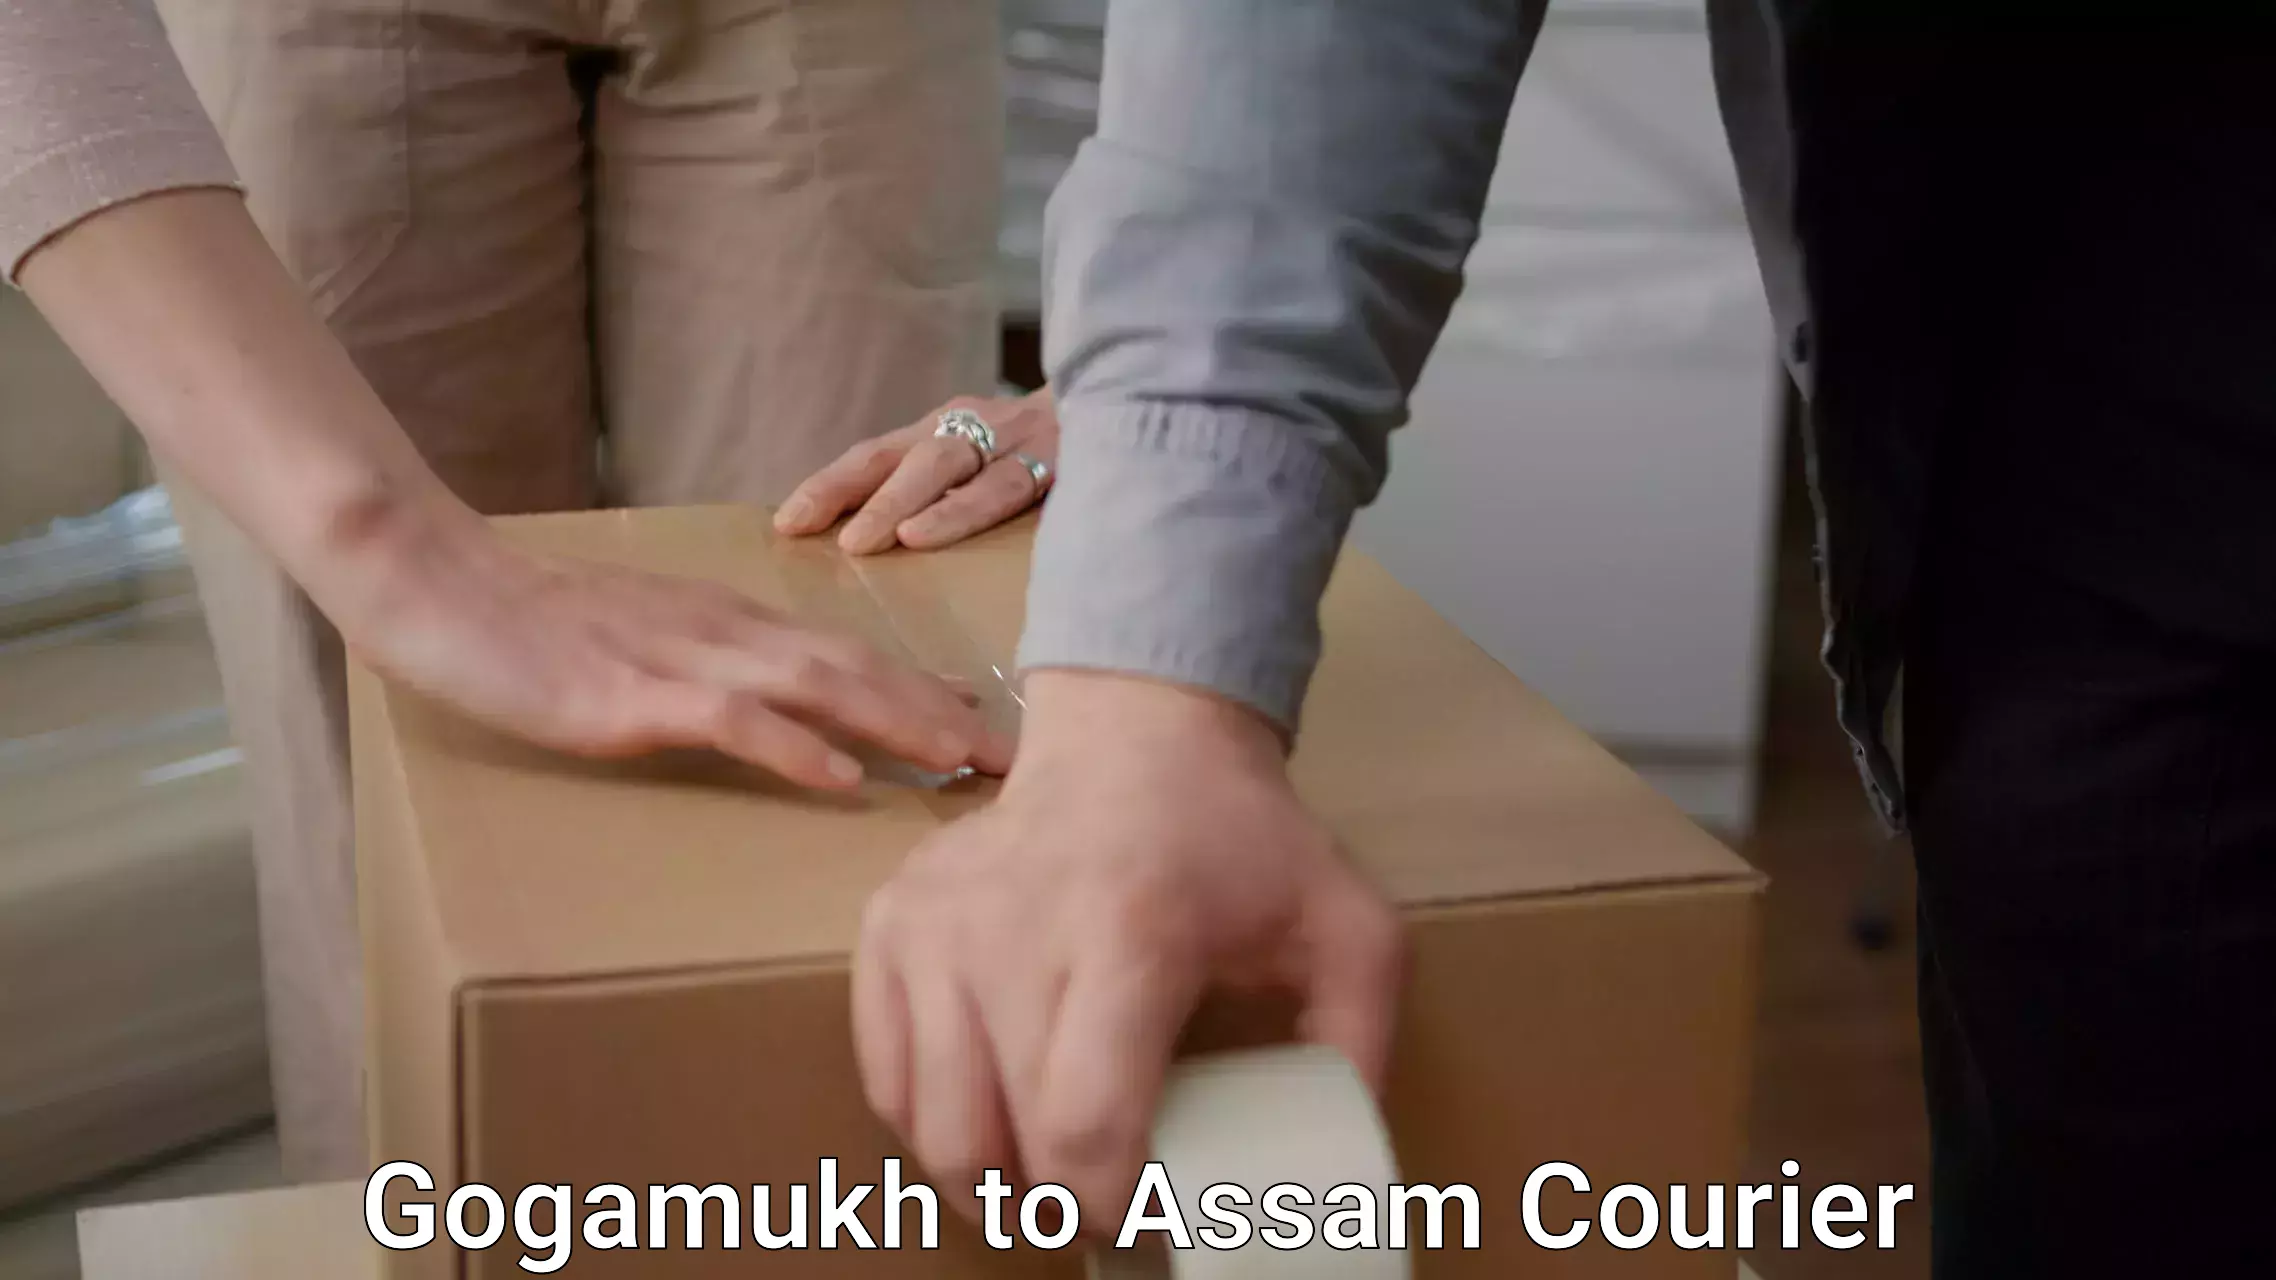 Professional moving company Gogamukh to Assam